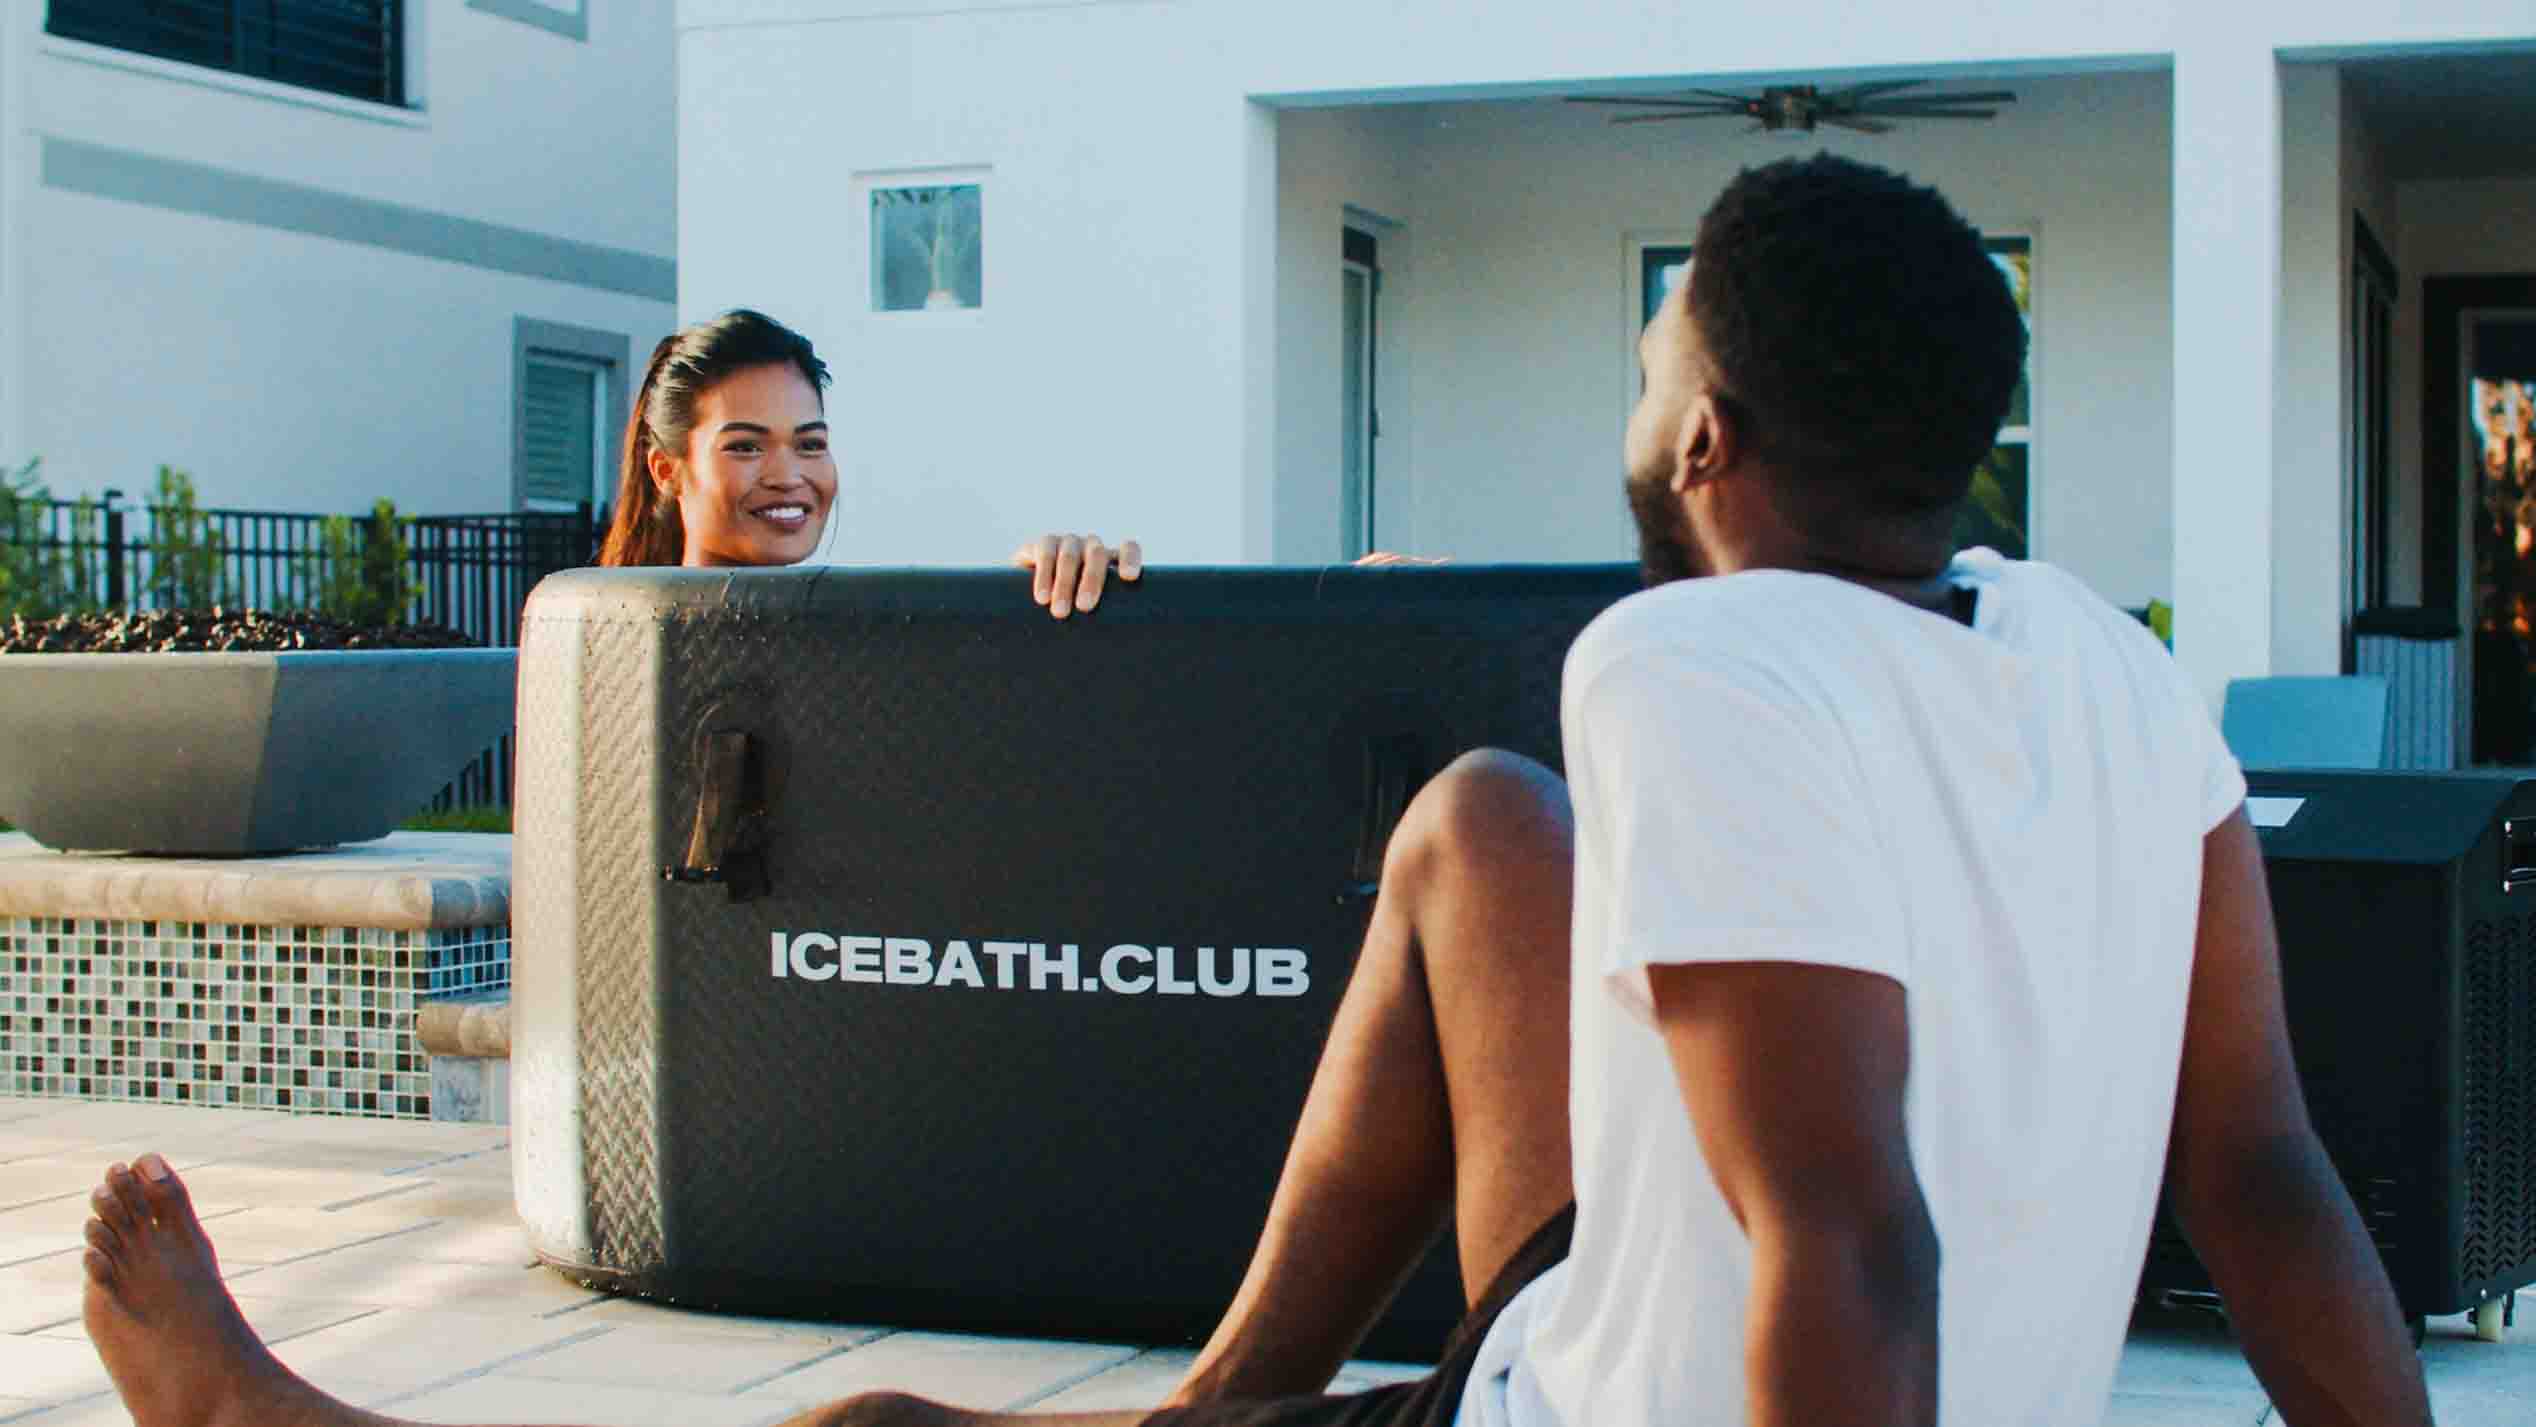 IceBath.Club